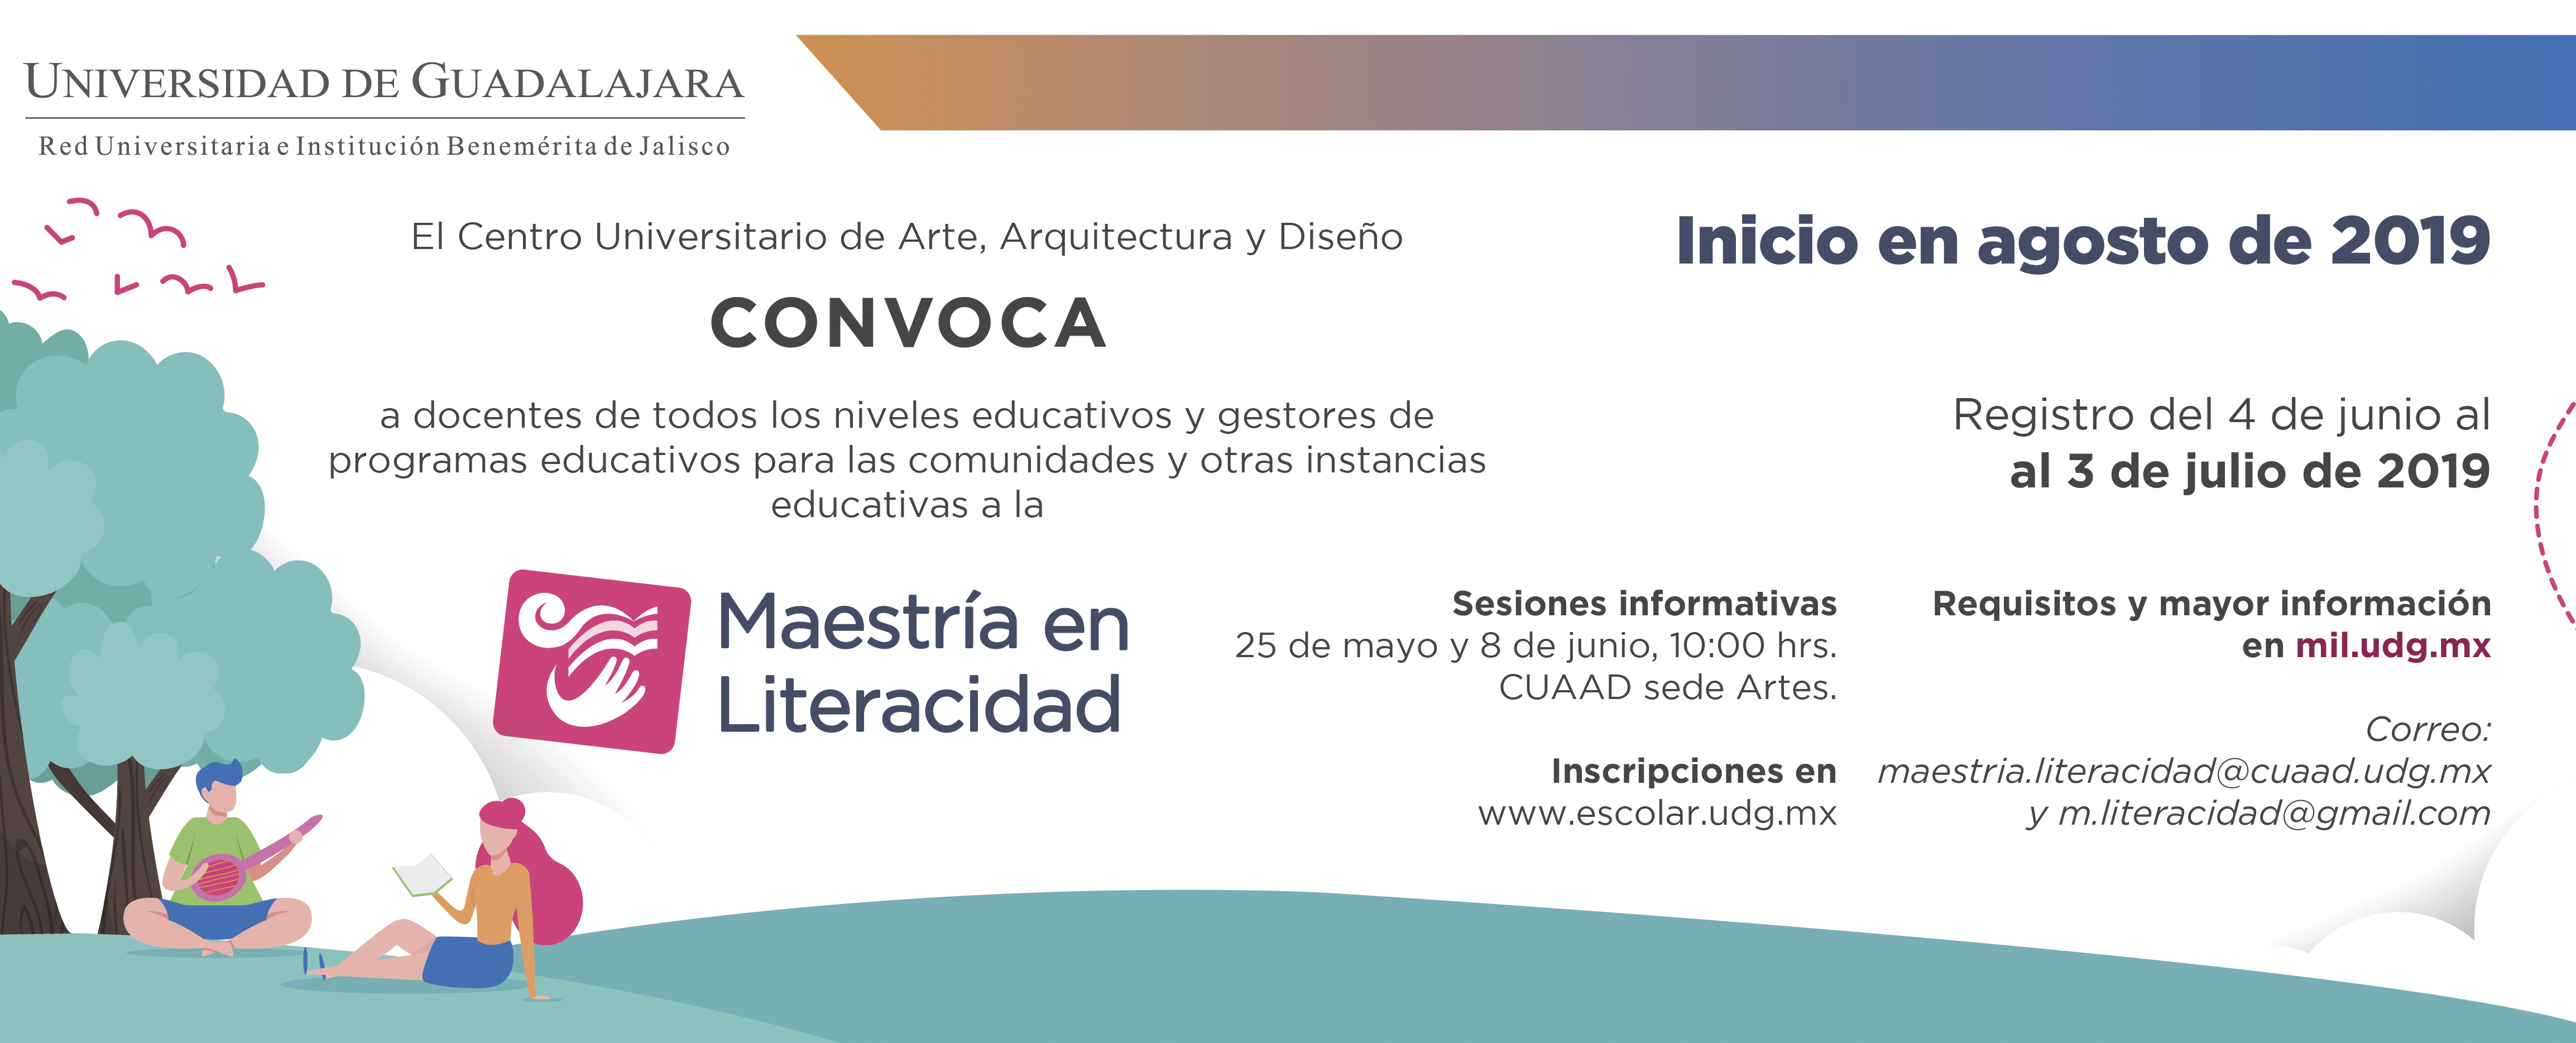 Cartel informativo sobre la Maestría en Literacidad, en el CUAAD sede Artes